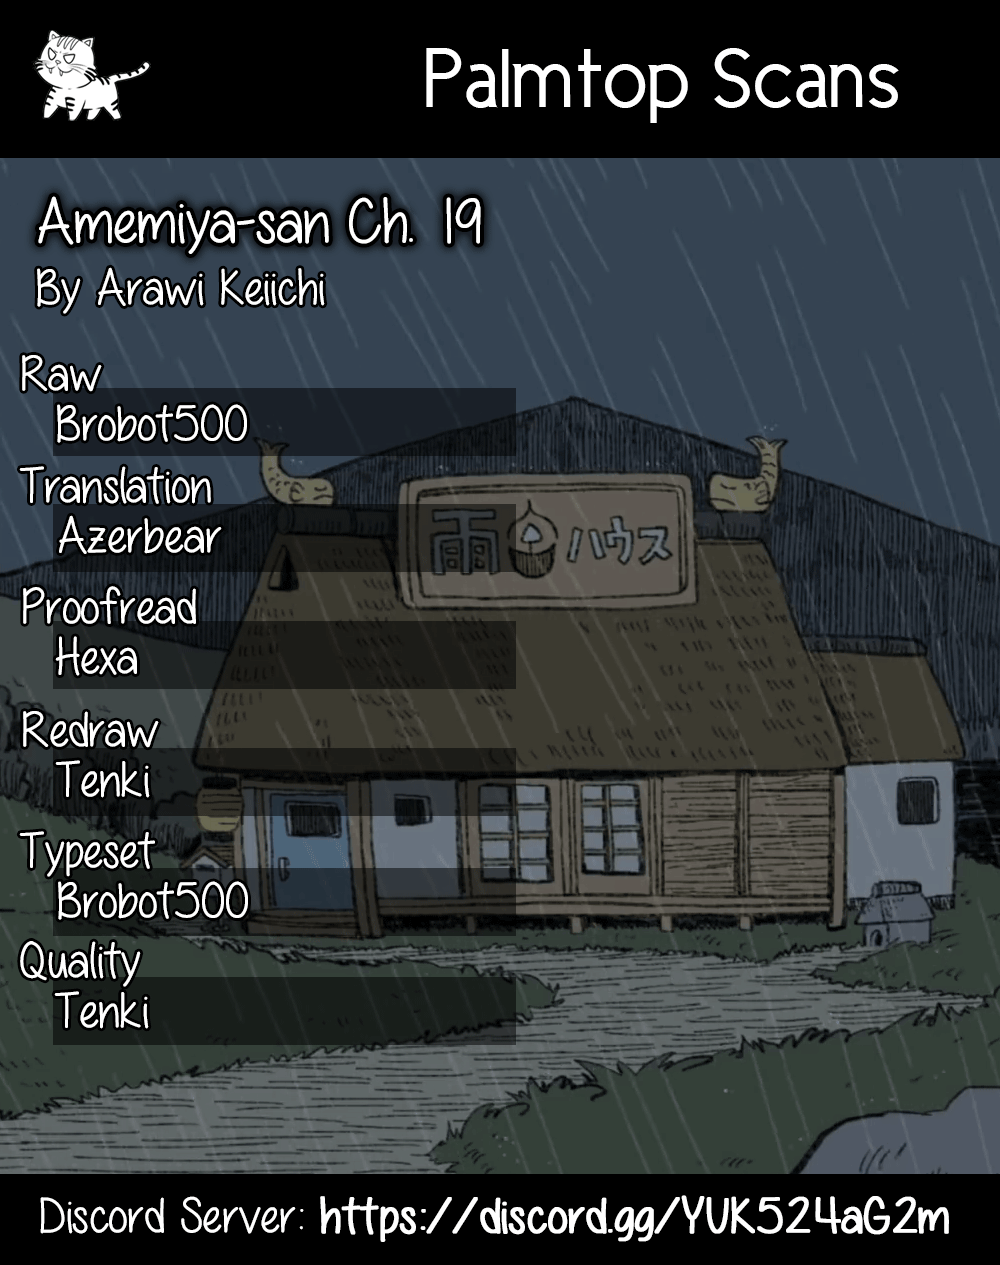 Amemiya-san 19